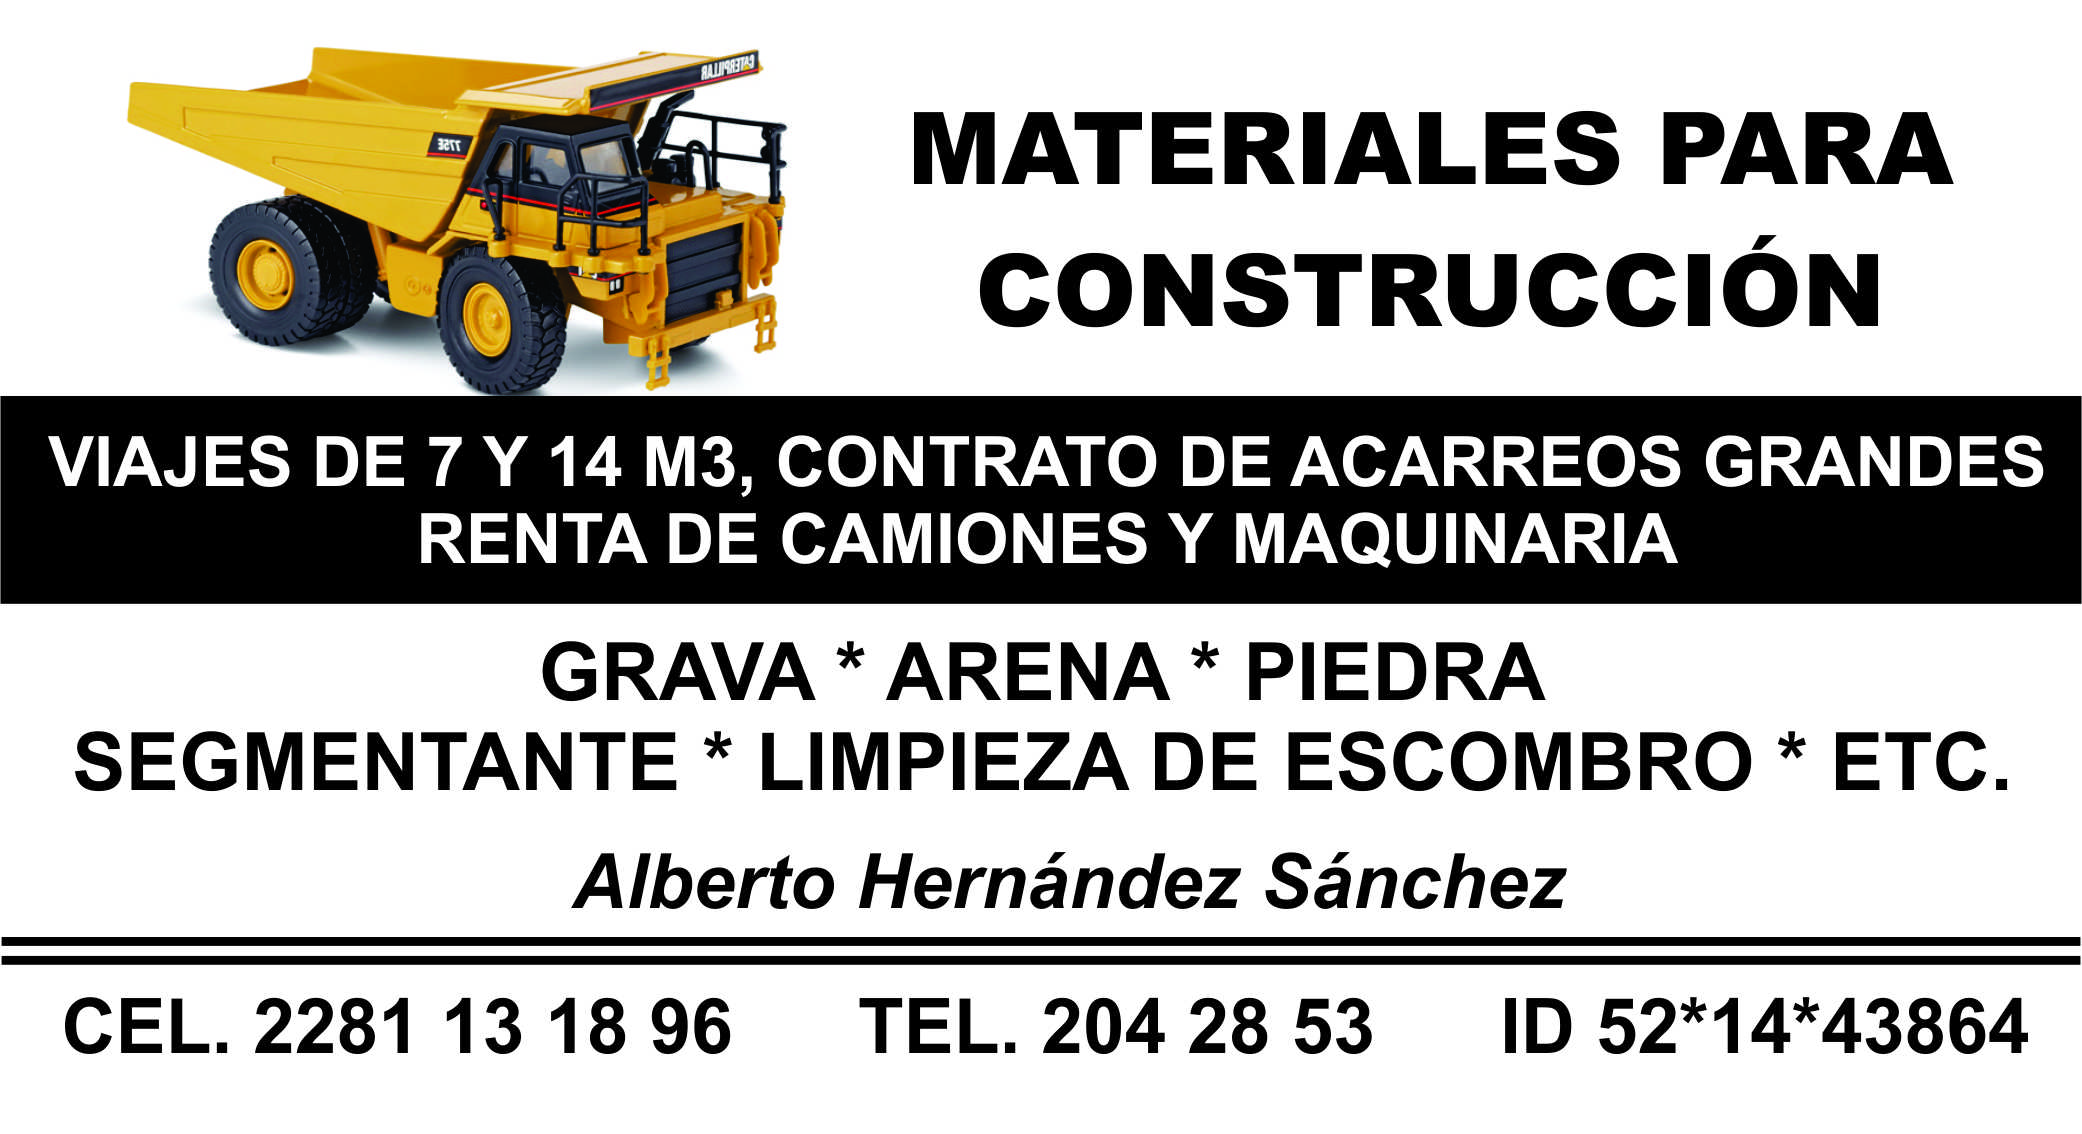 MATERIALES PARA CONSTRUCCION HERNANDEZ